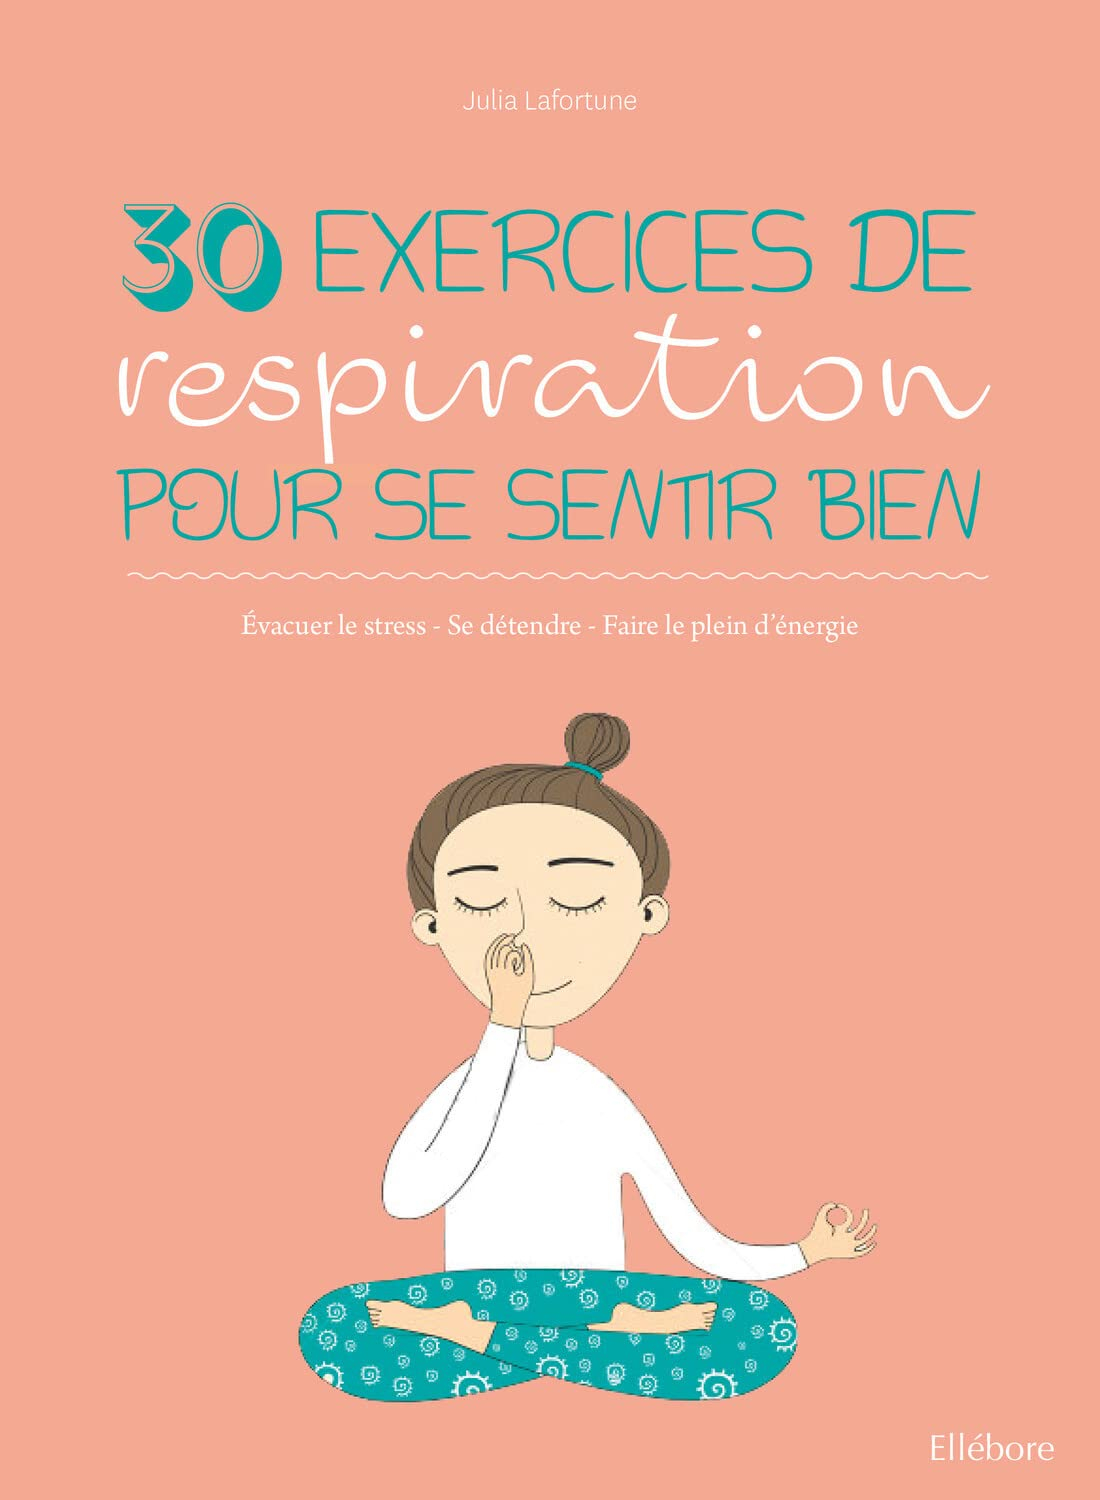 30 exercices de respiration pour se sentir bien : évacuer le stress, se détendre, faire le plein d'é